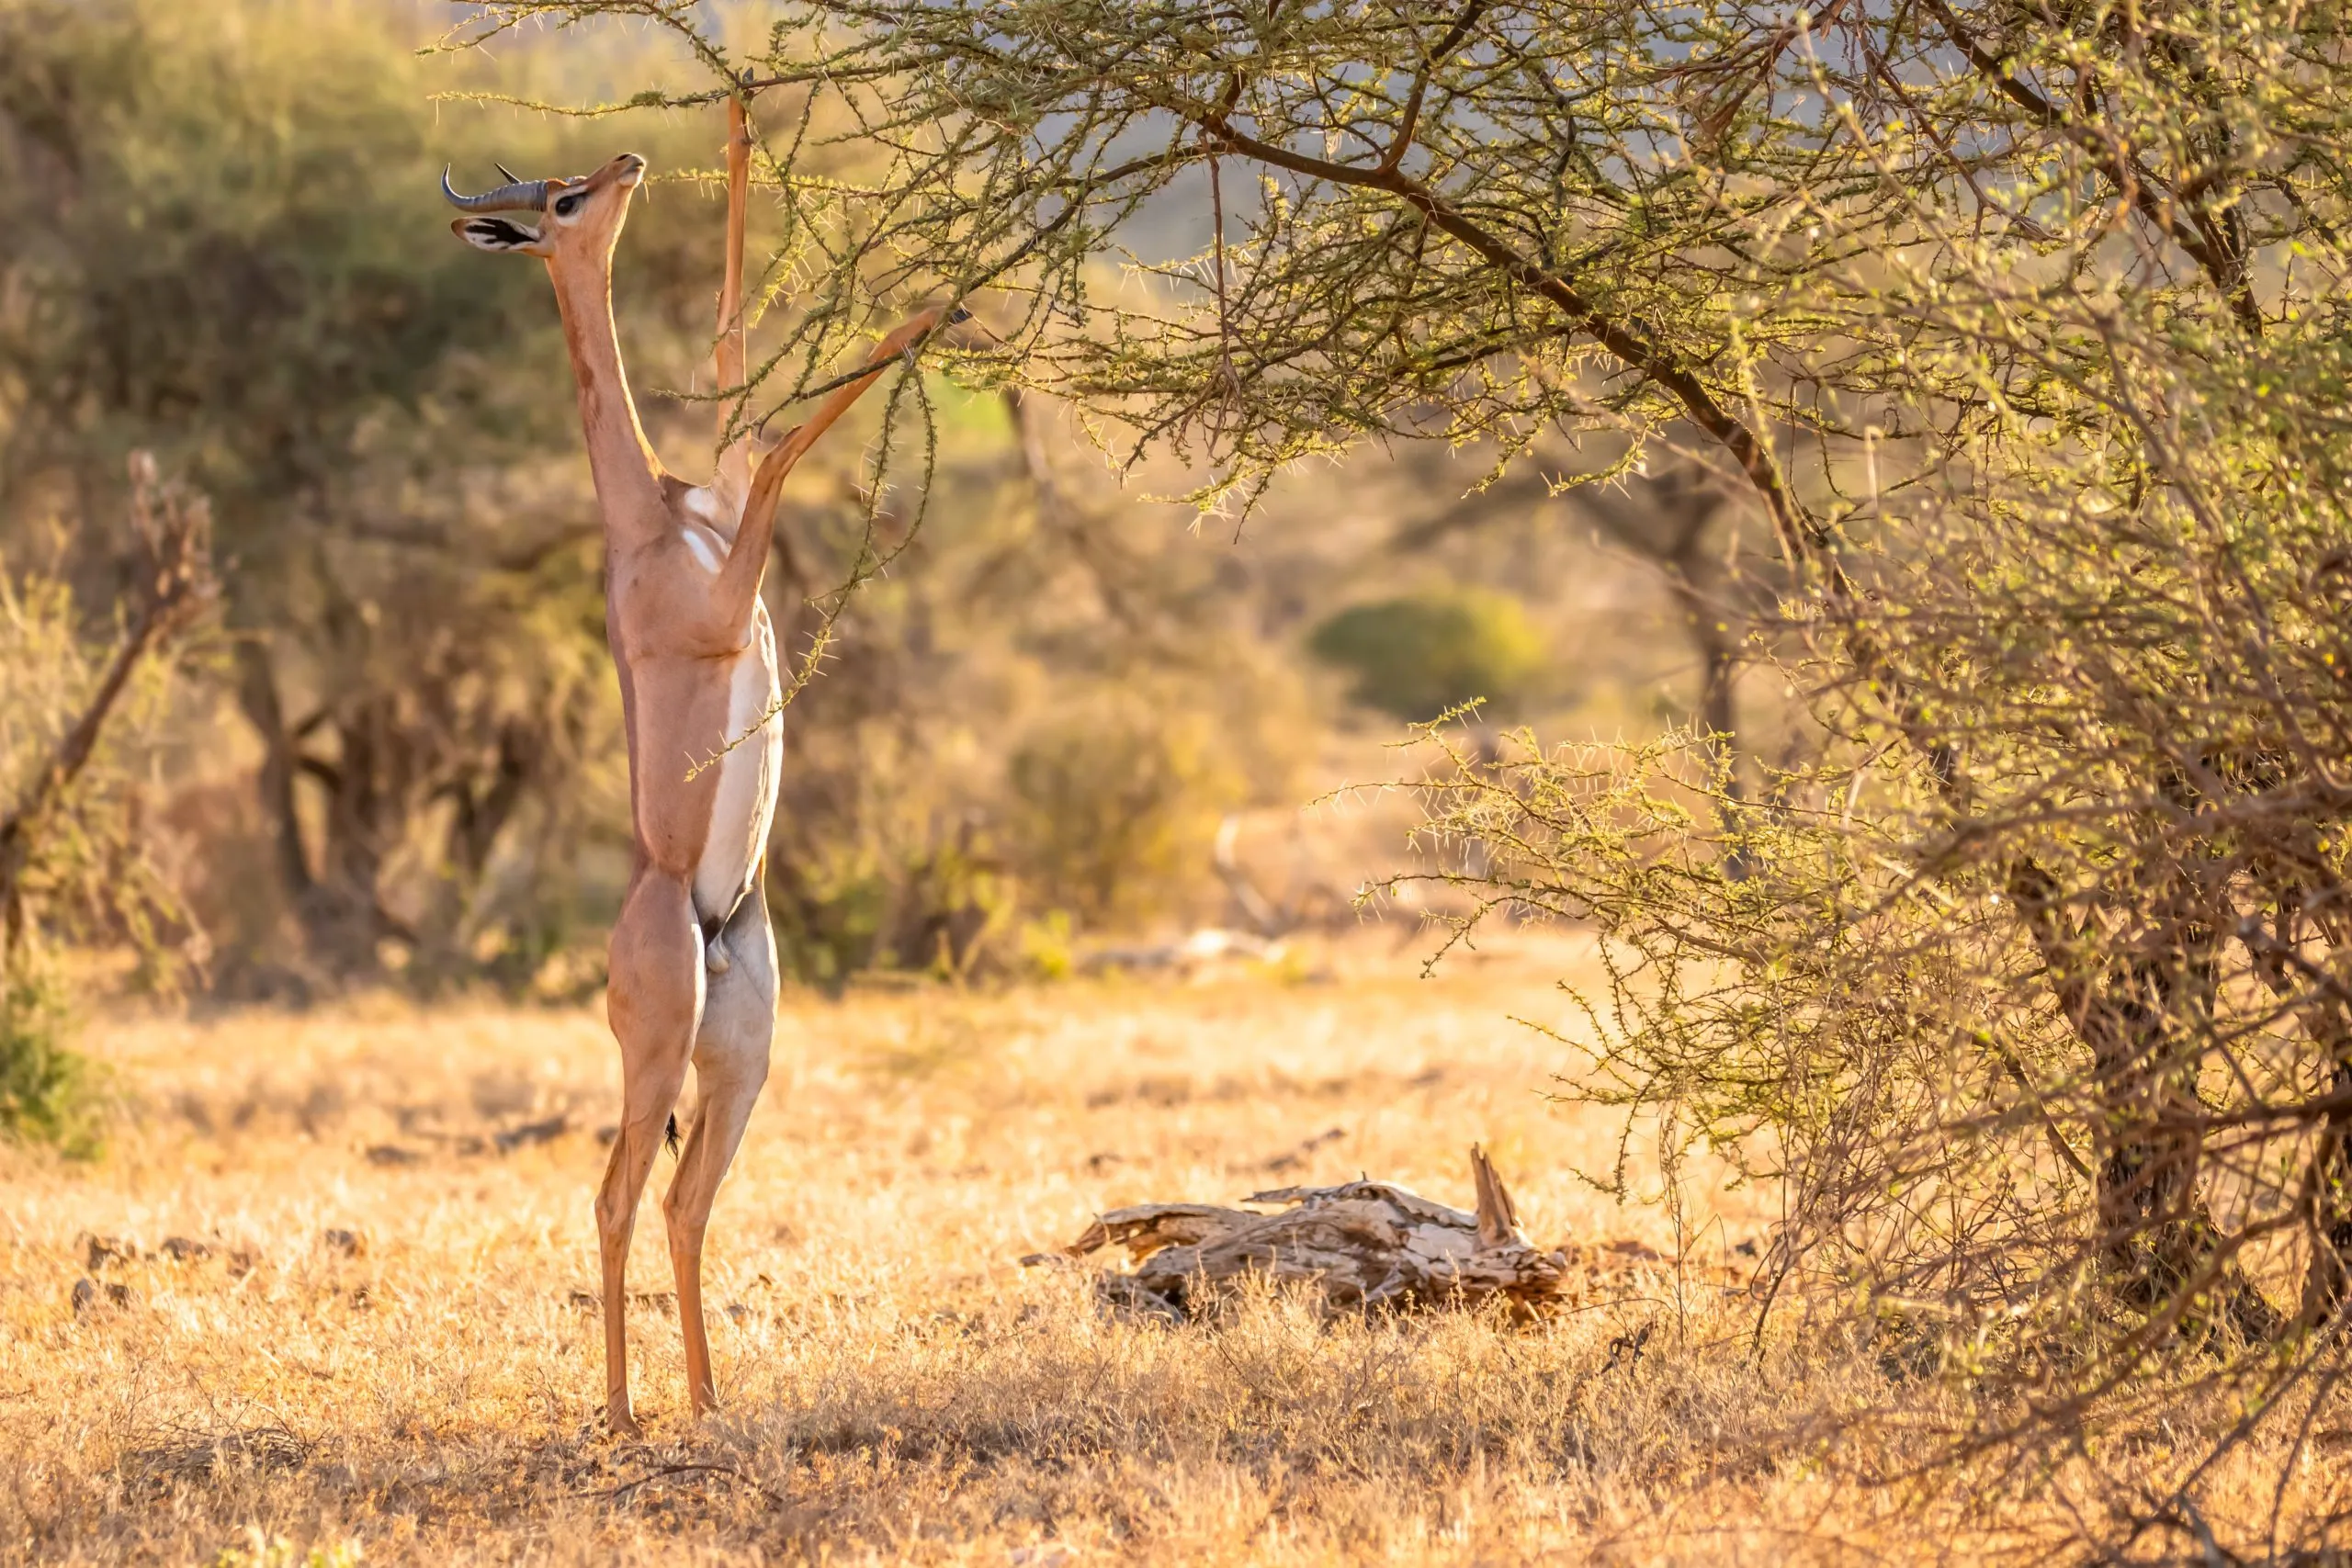 Gerenuk, Litocranius walleri auch Giraffengazelle, langhalsige Antilope, langer schlanker Hals und Gliedmaßen, auf den Hinterbeinen stehend bei der Blattfütterung. Abendliche afrikanische Farben. Samburu-Nationalreservat, Kenia